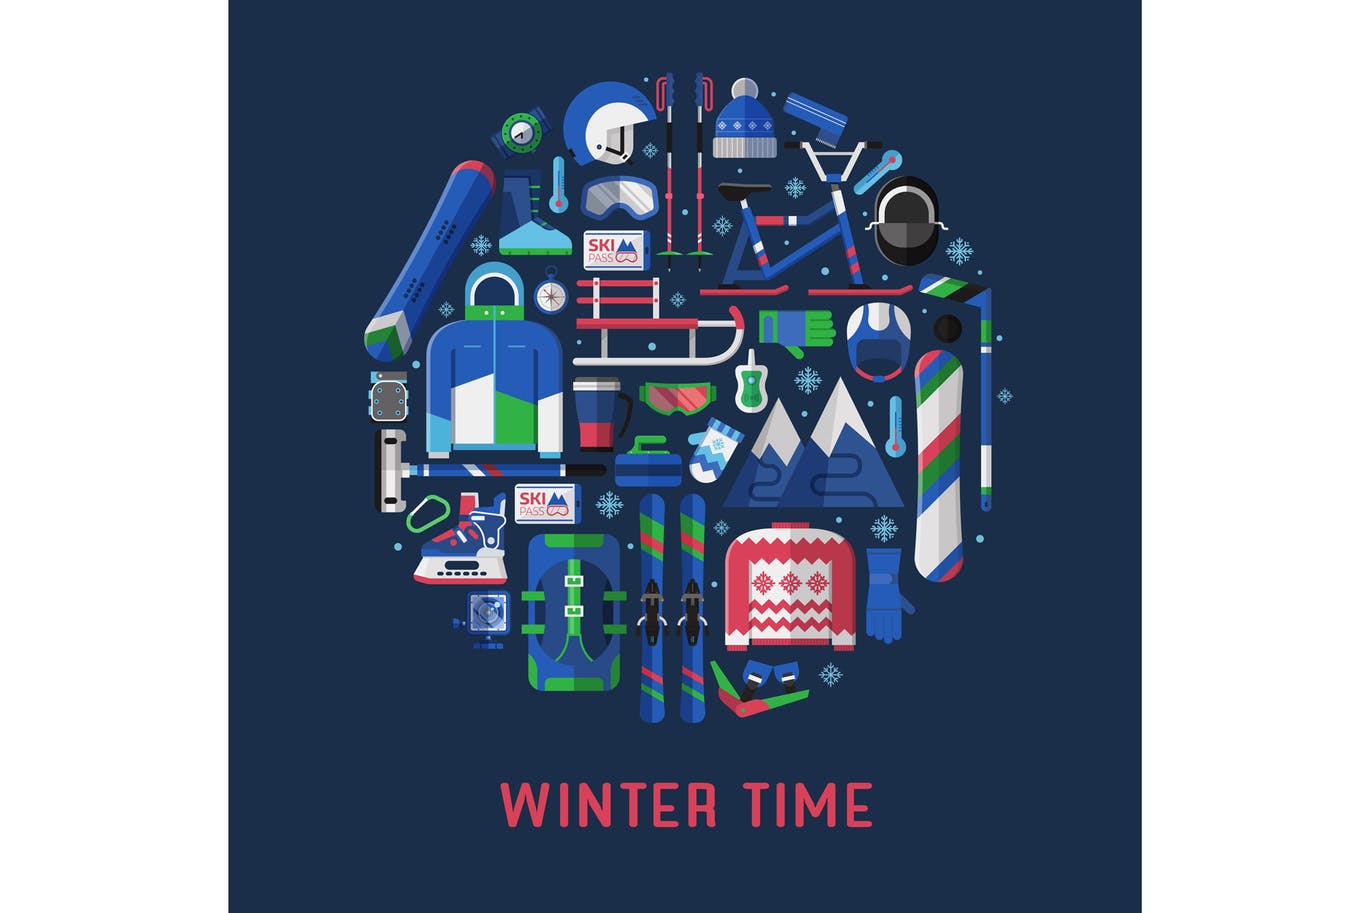 冬季运动主题扁平设计风格圆形矢量插画第一素材精选 Winter Time Card with Circle Print插图